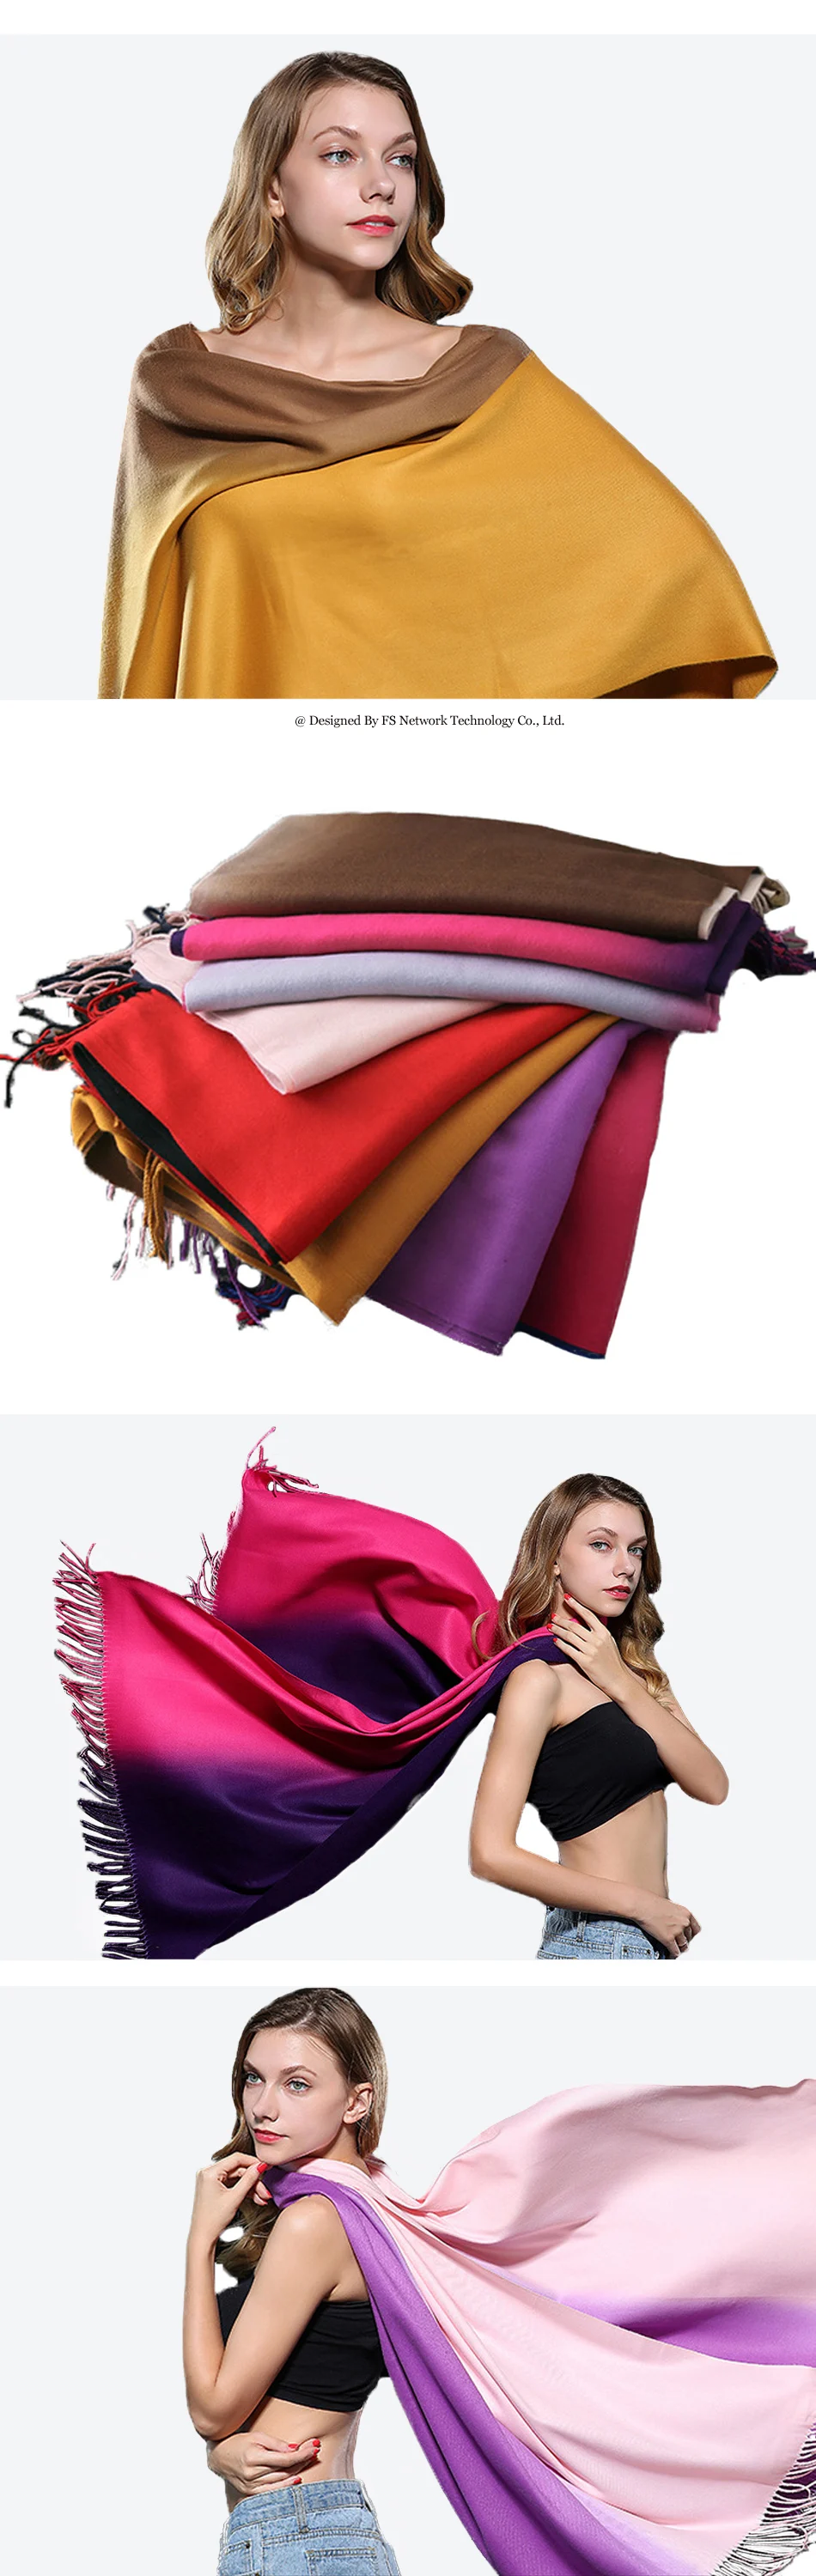 FS градиентный цвет зимний теплый шерстяной кашемировый шарф длинные шарфы женские дизайнерские Роскошные брендовые шали шарфы